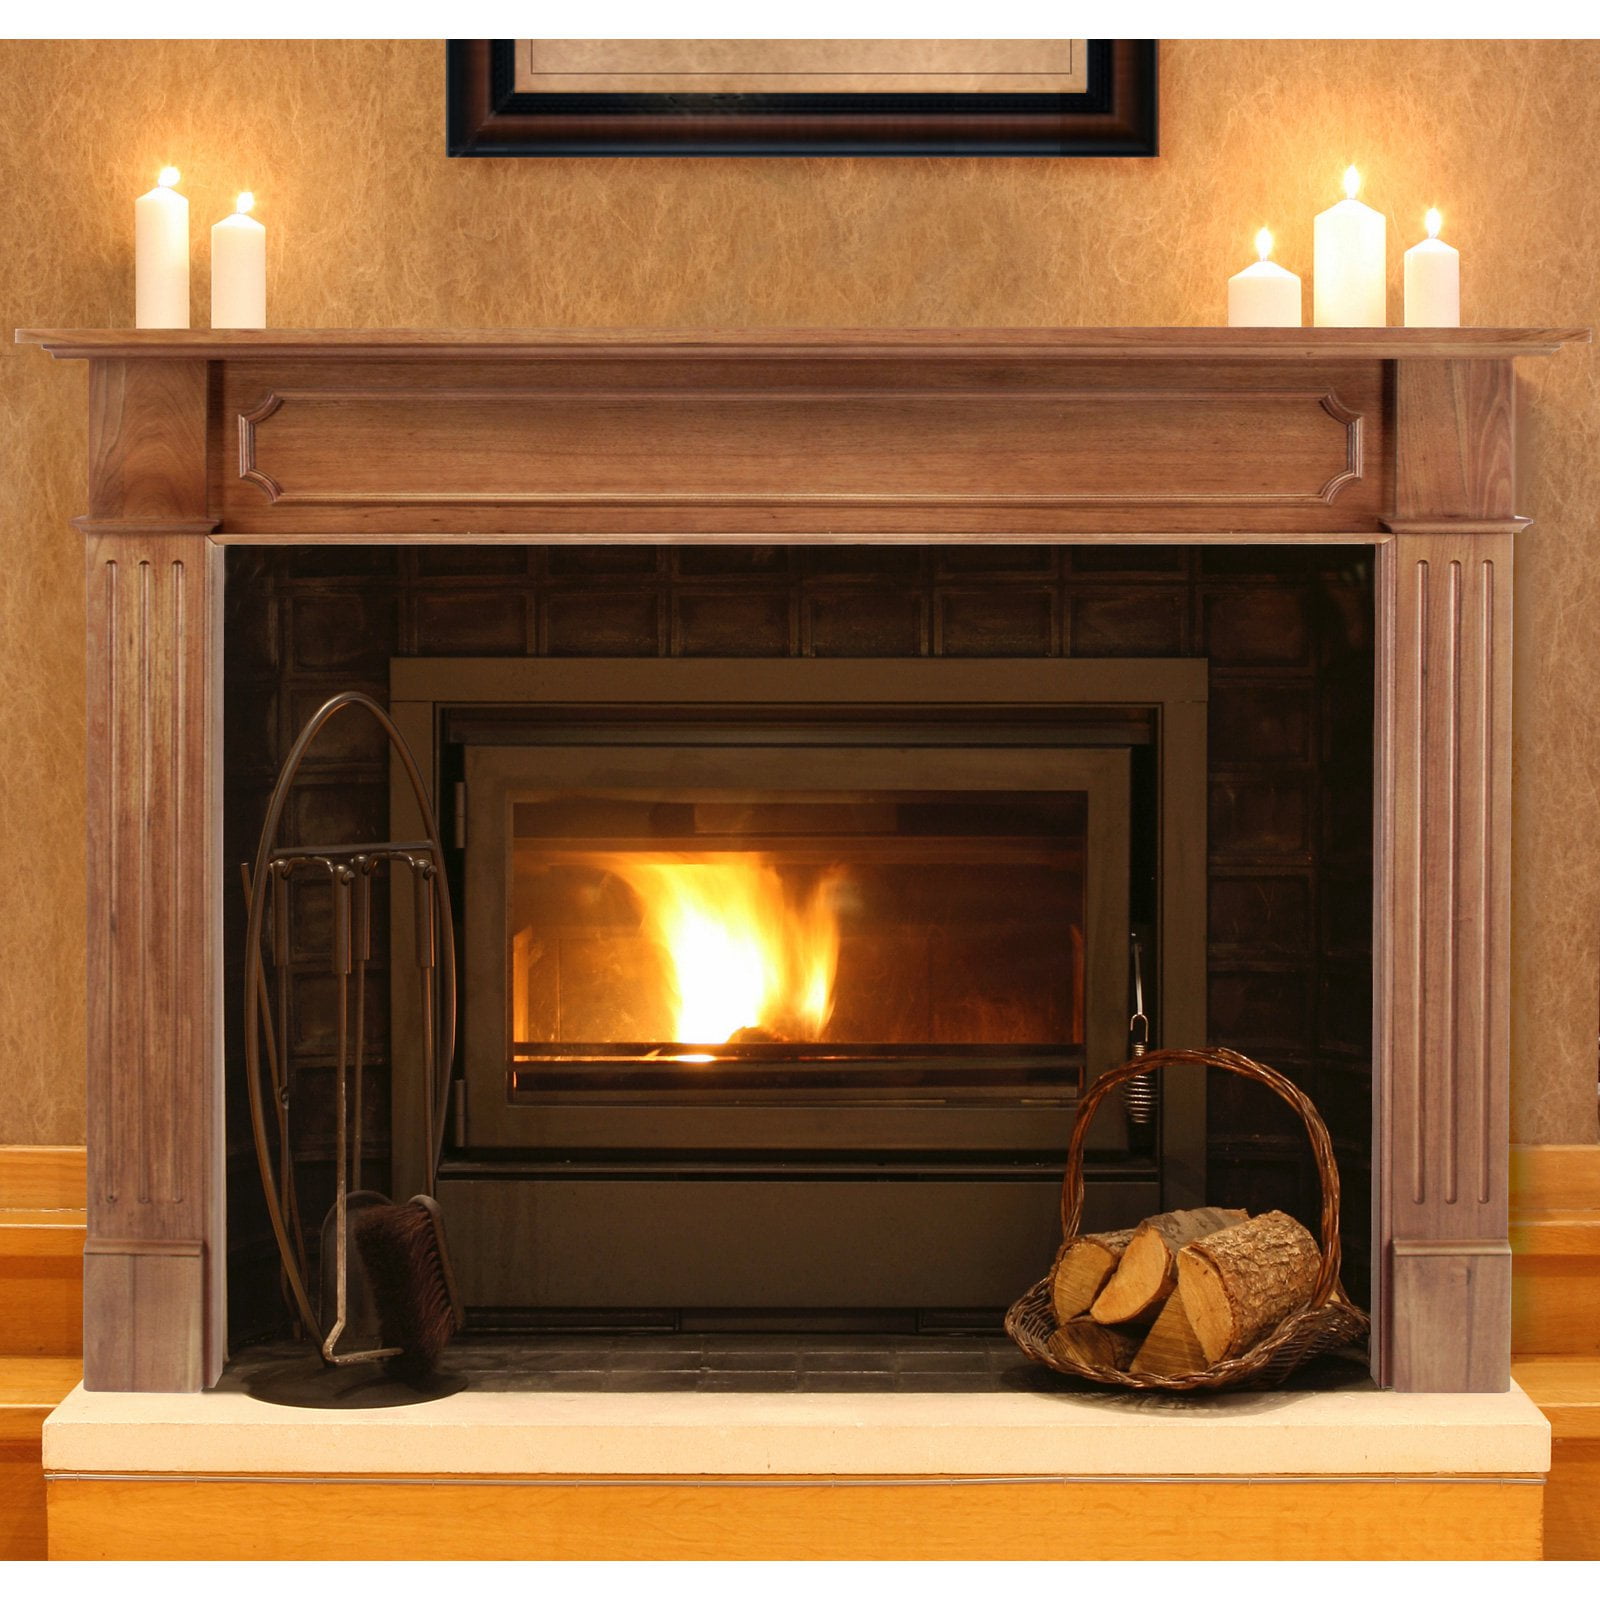 Pearl Mantels Alamo Wood Fireplace, Fireplace Wood Mantels And Surrounds